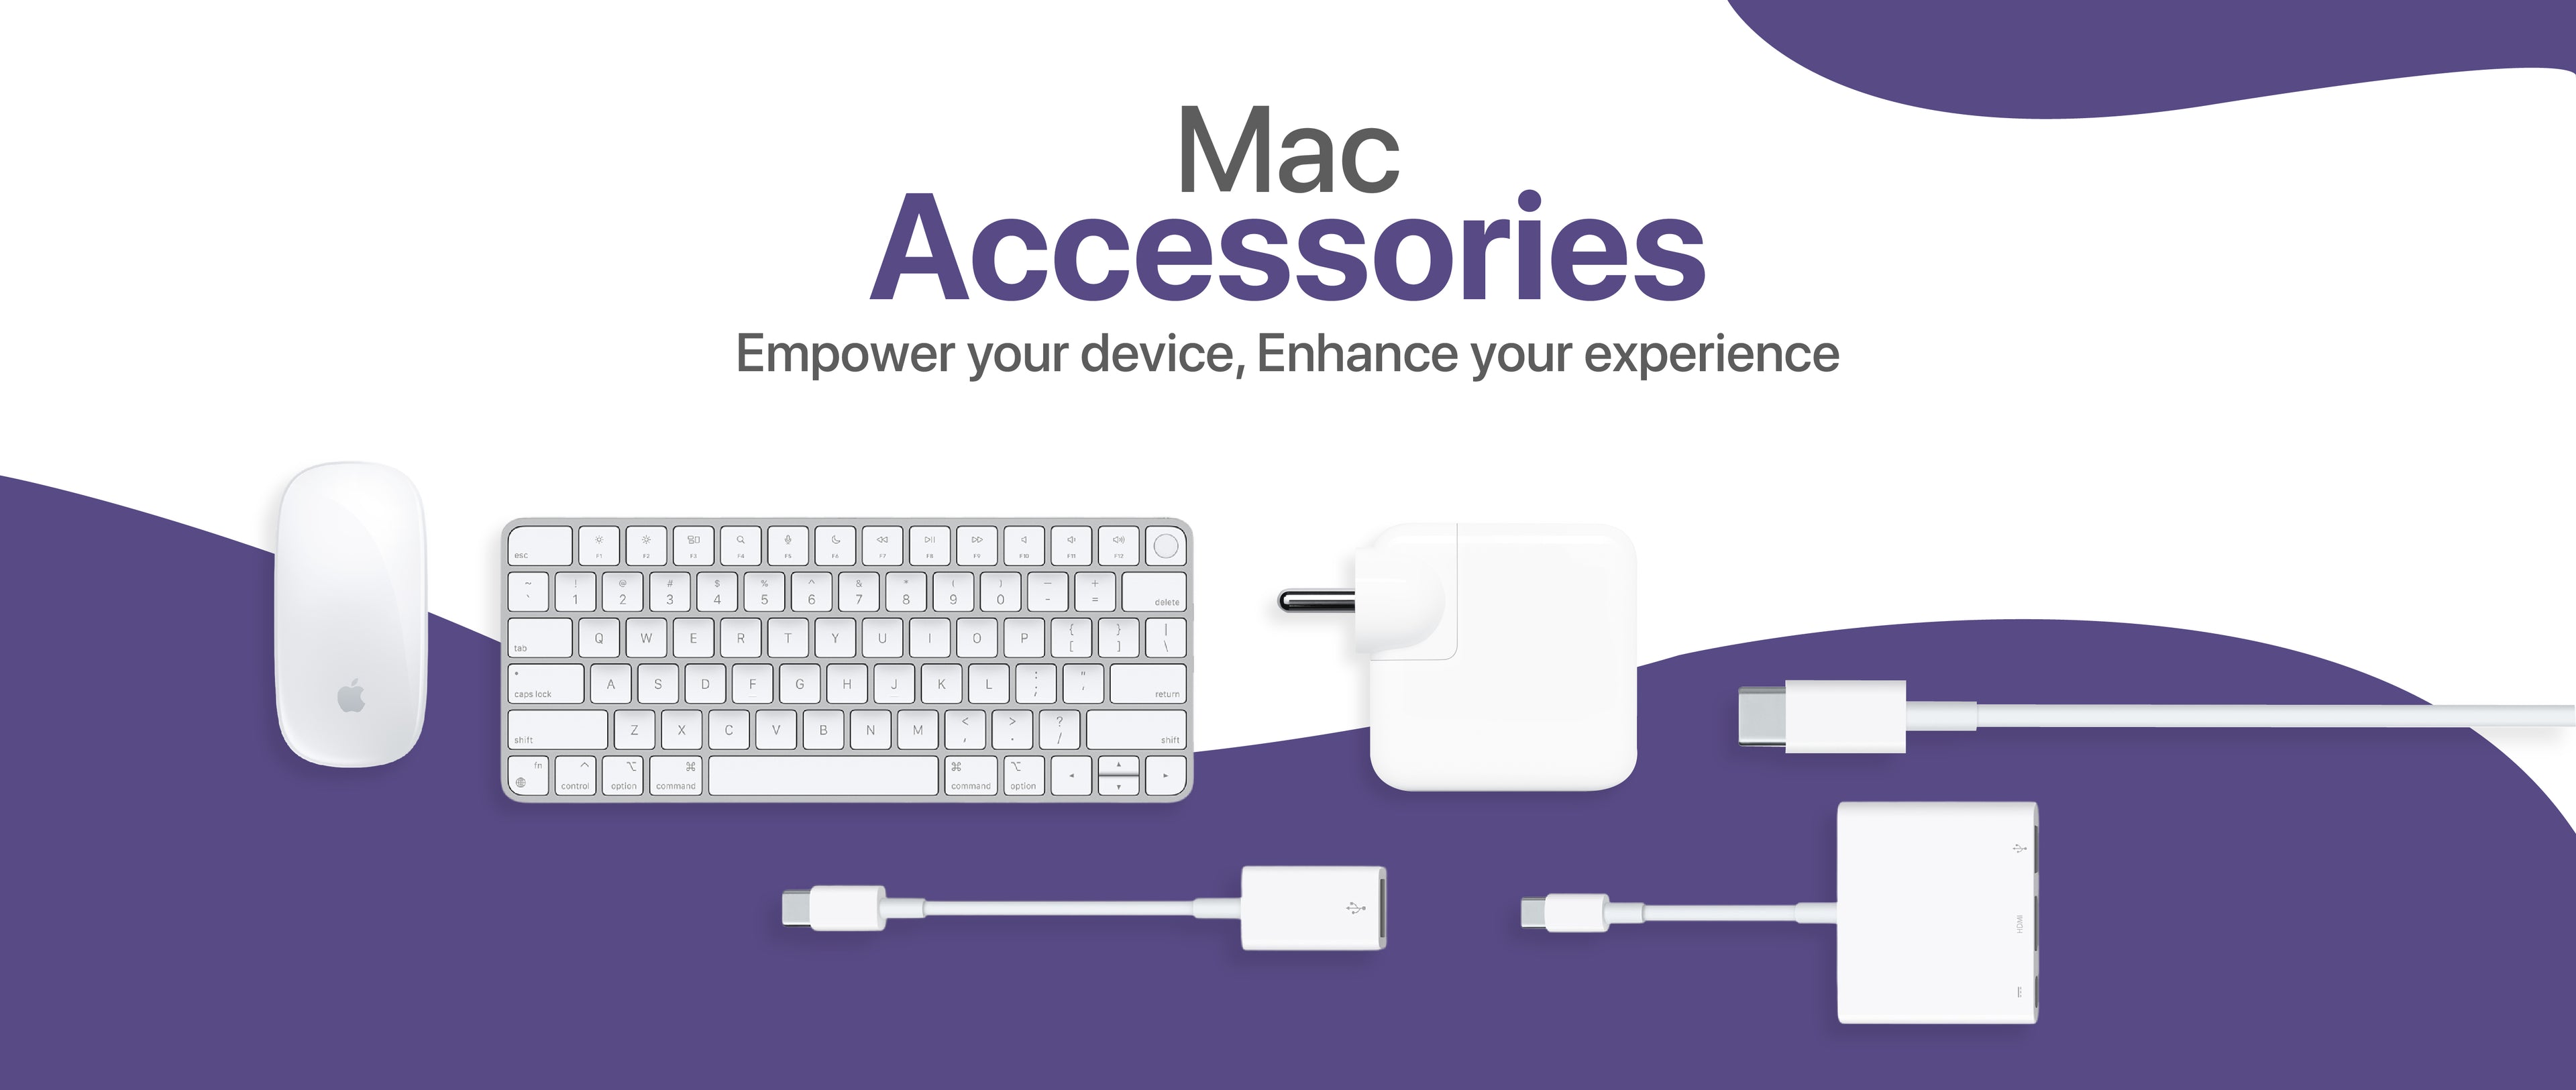 Mac Accessories